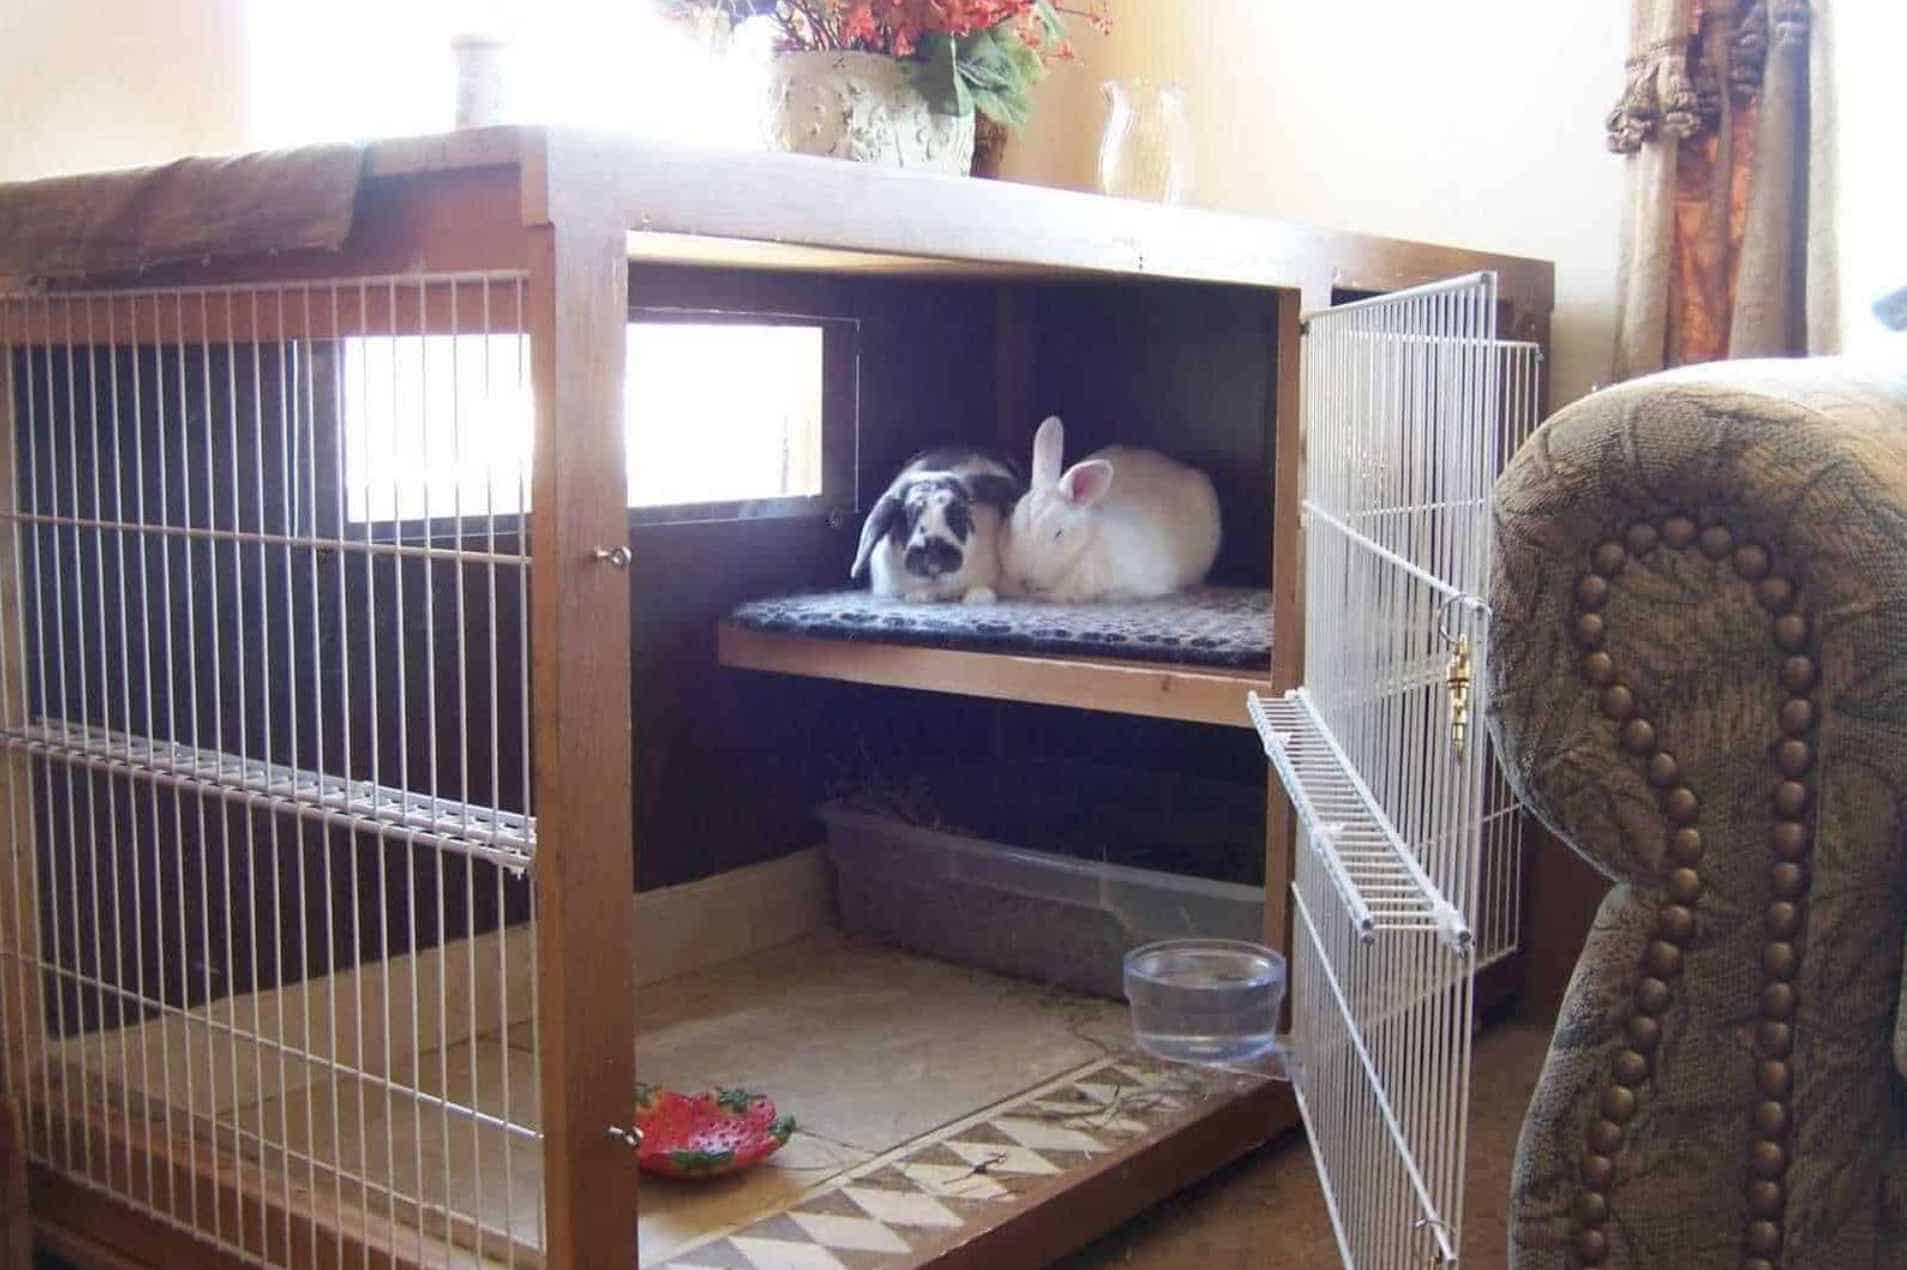 Keep the Rabbit Indoors